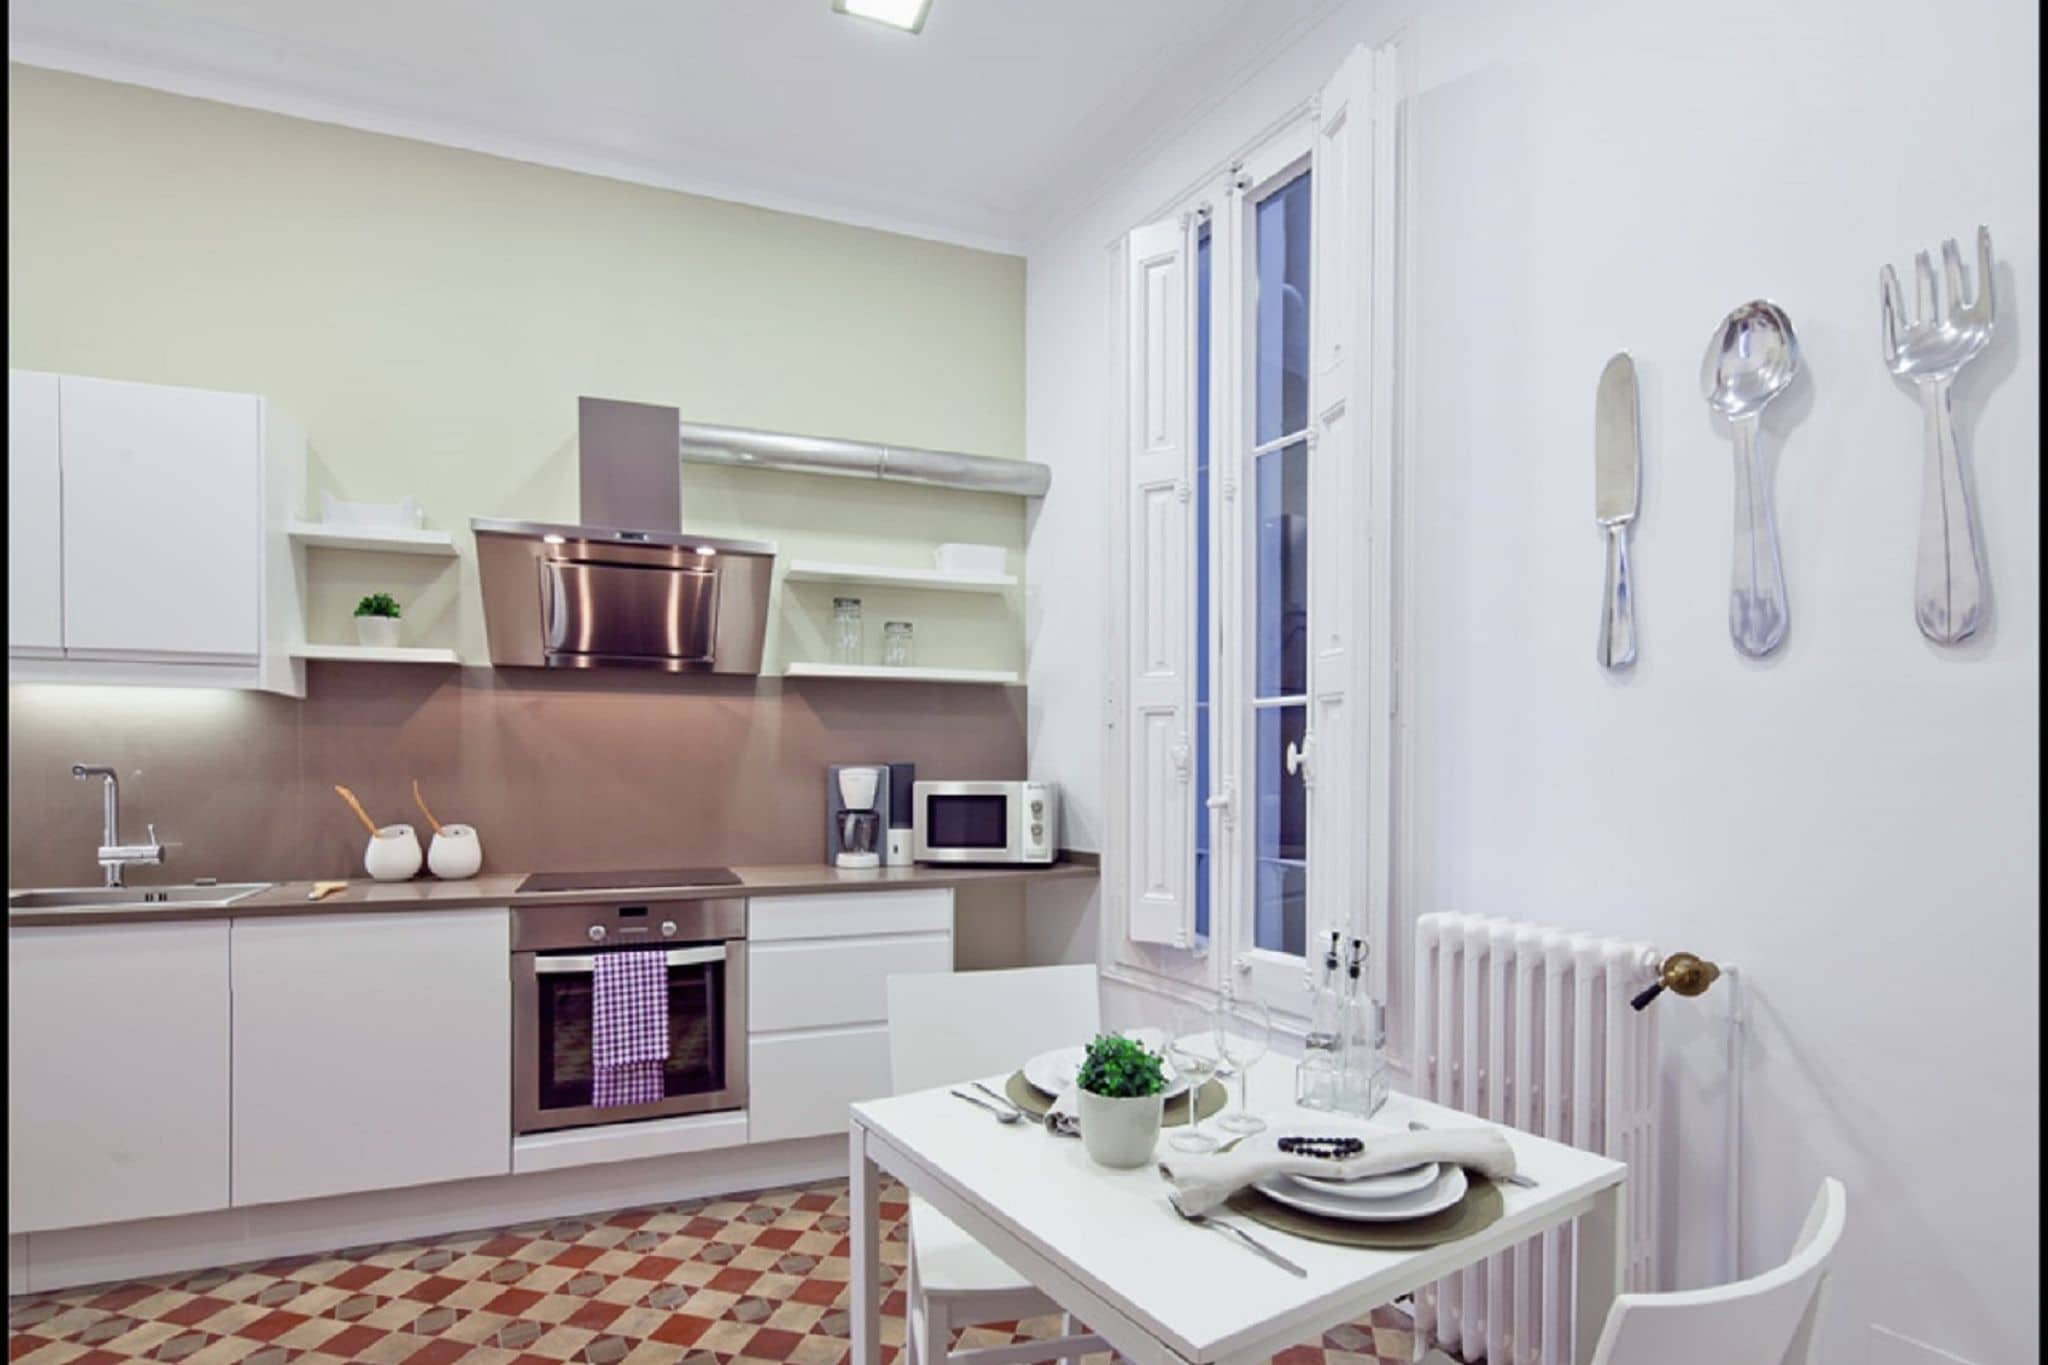 Luxuriöse Wohnung für 8 Personen, kürzlich renoviert im Zentrum von Barcelona